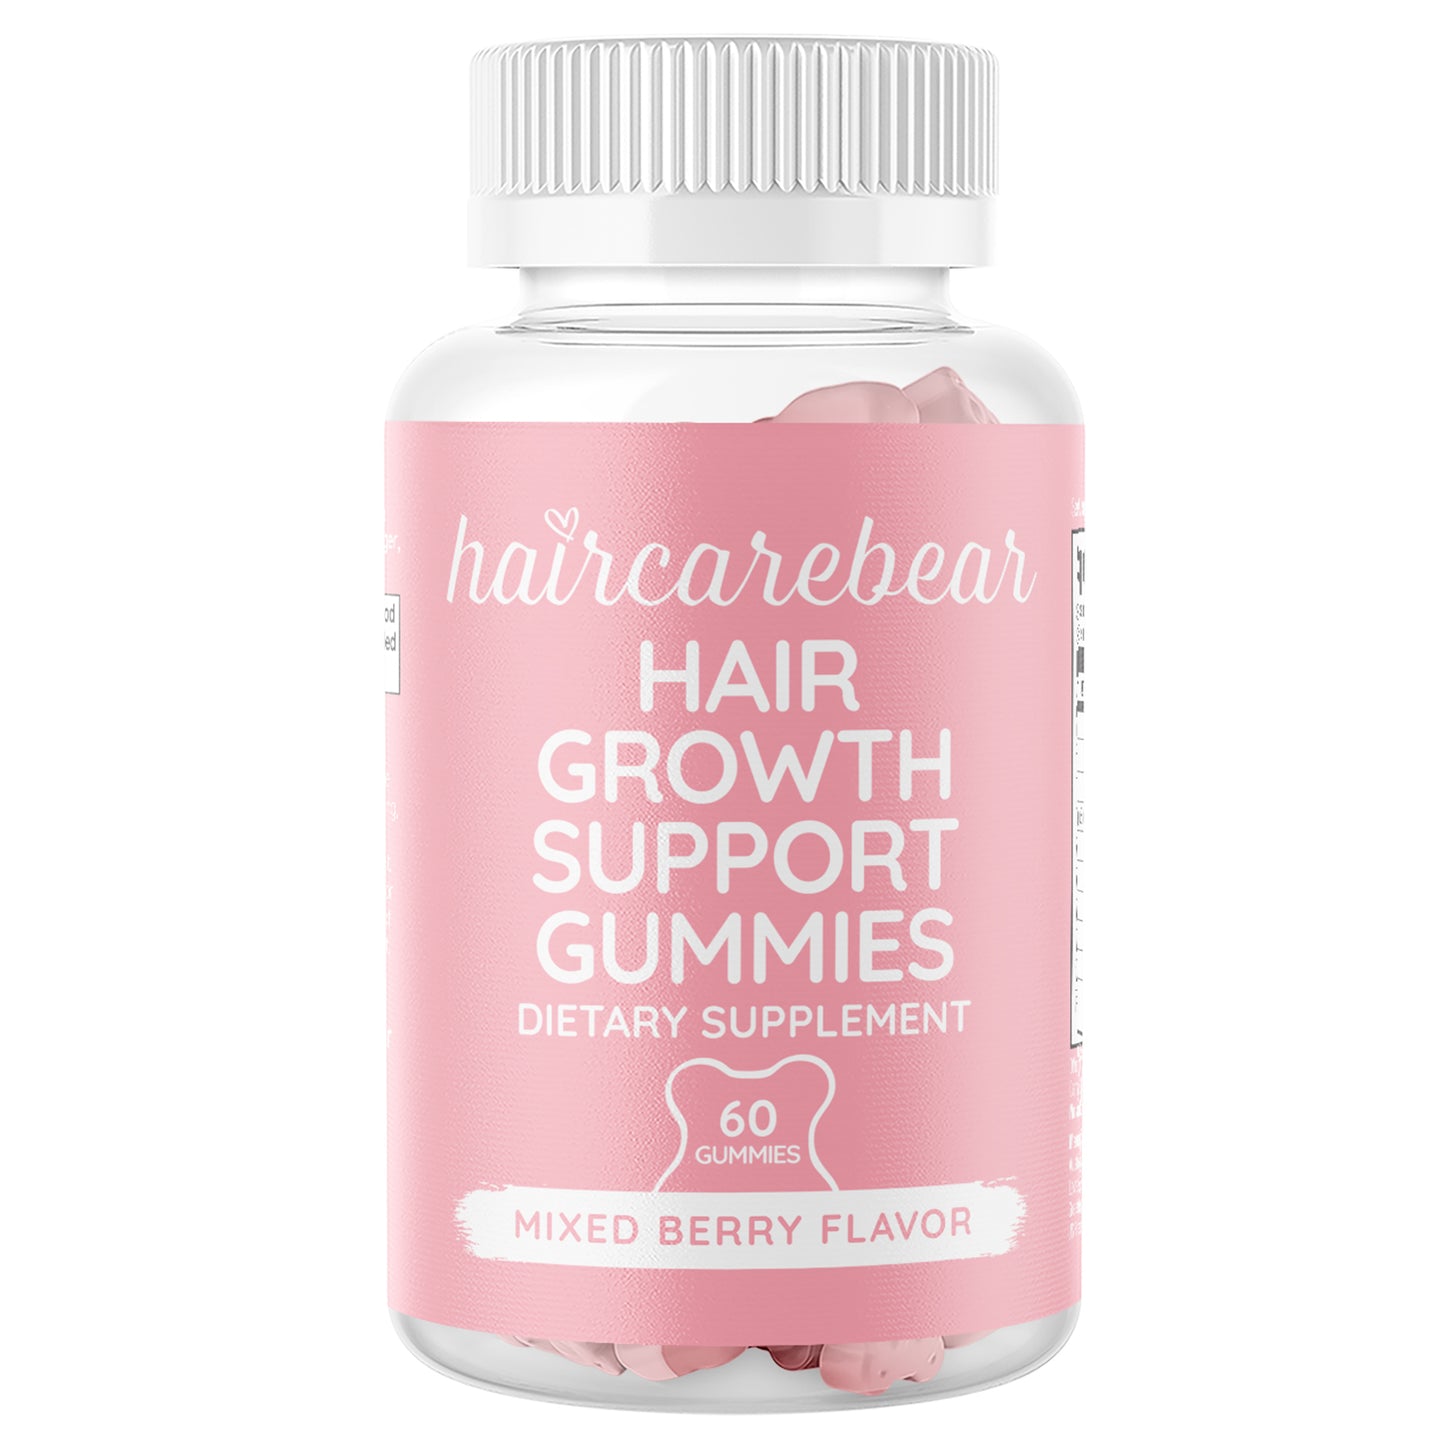 Haircarebear Hair Growth Support Gummies